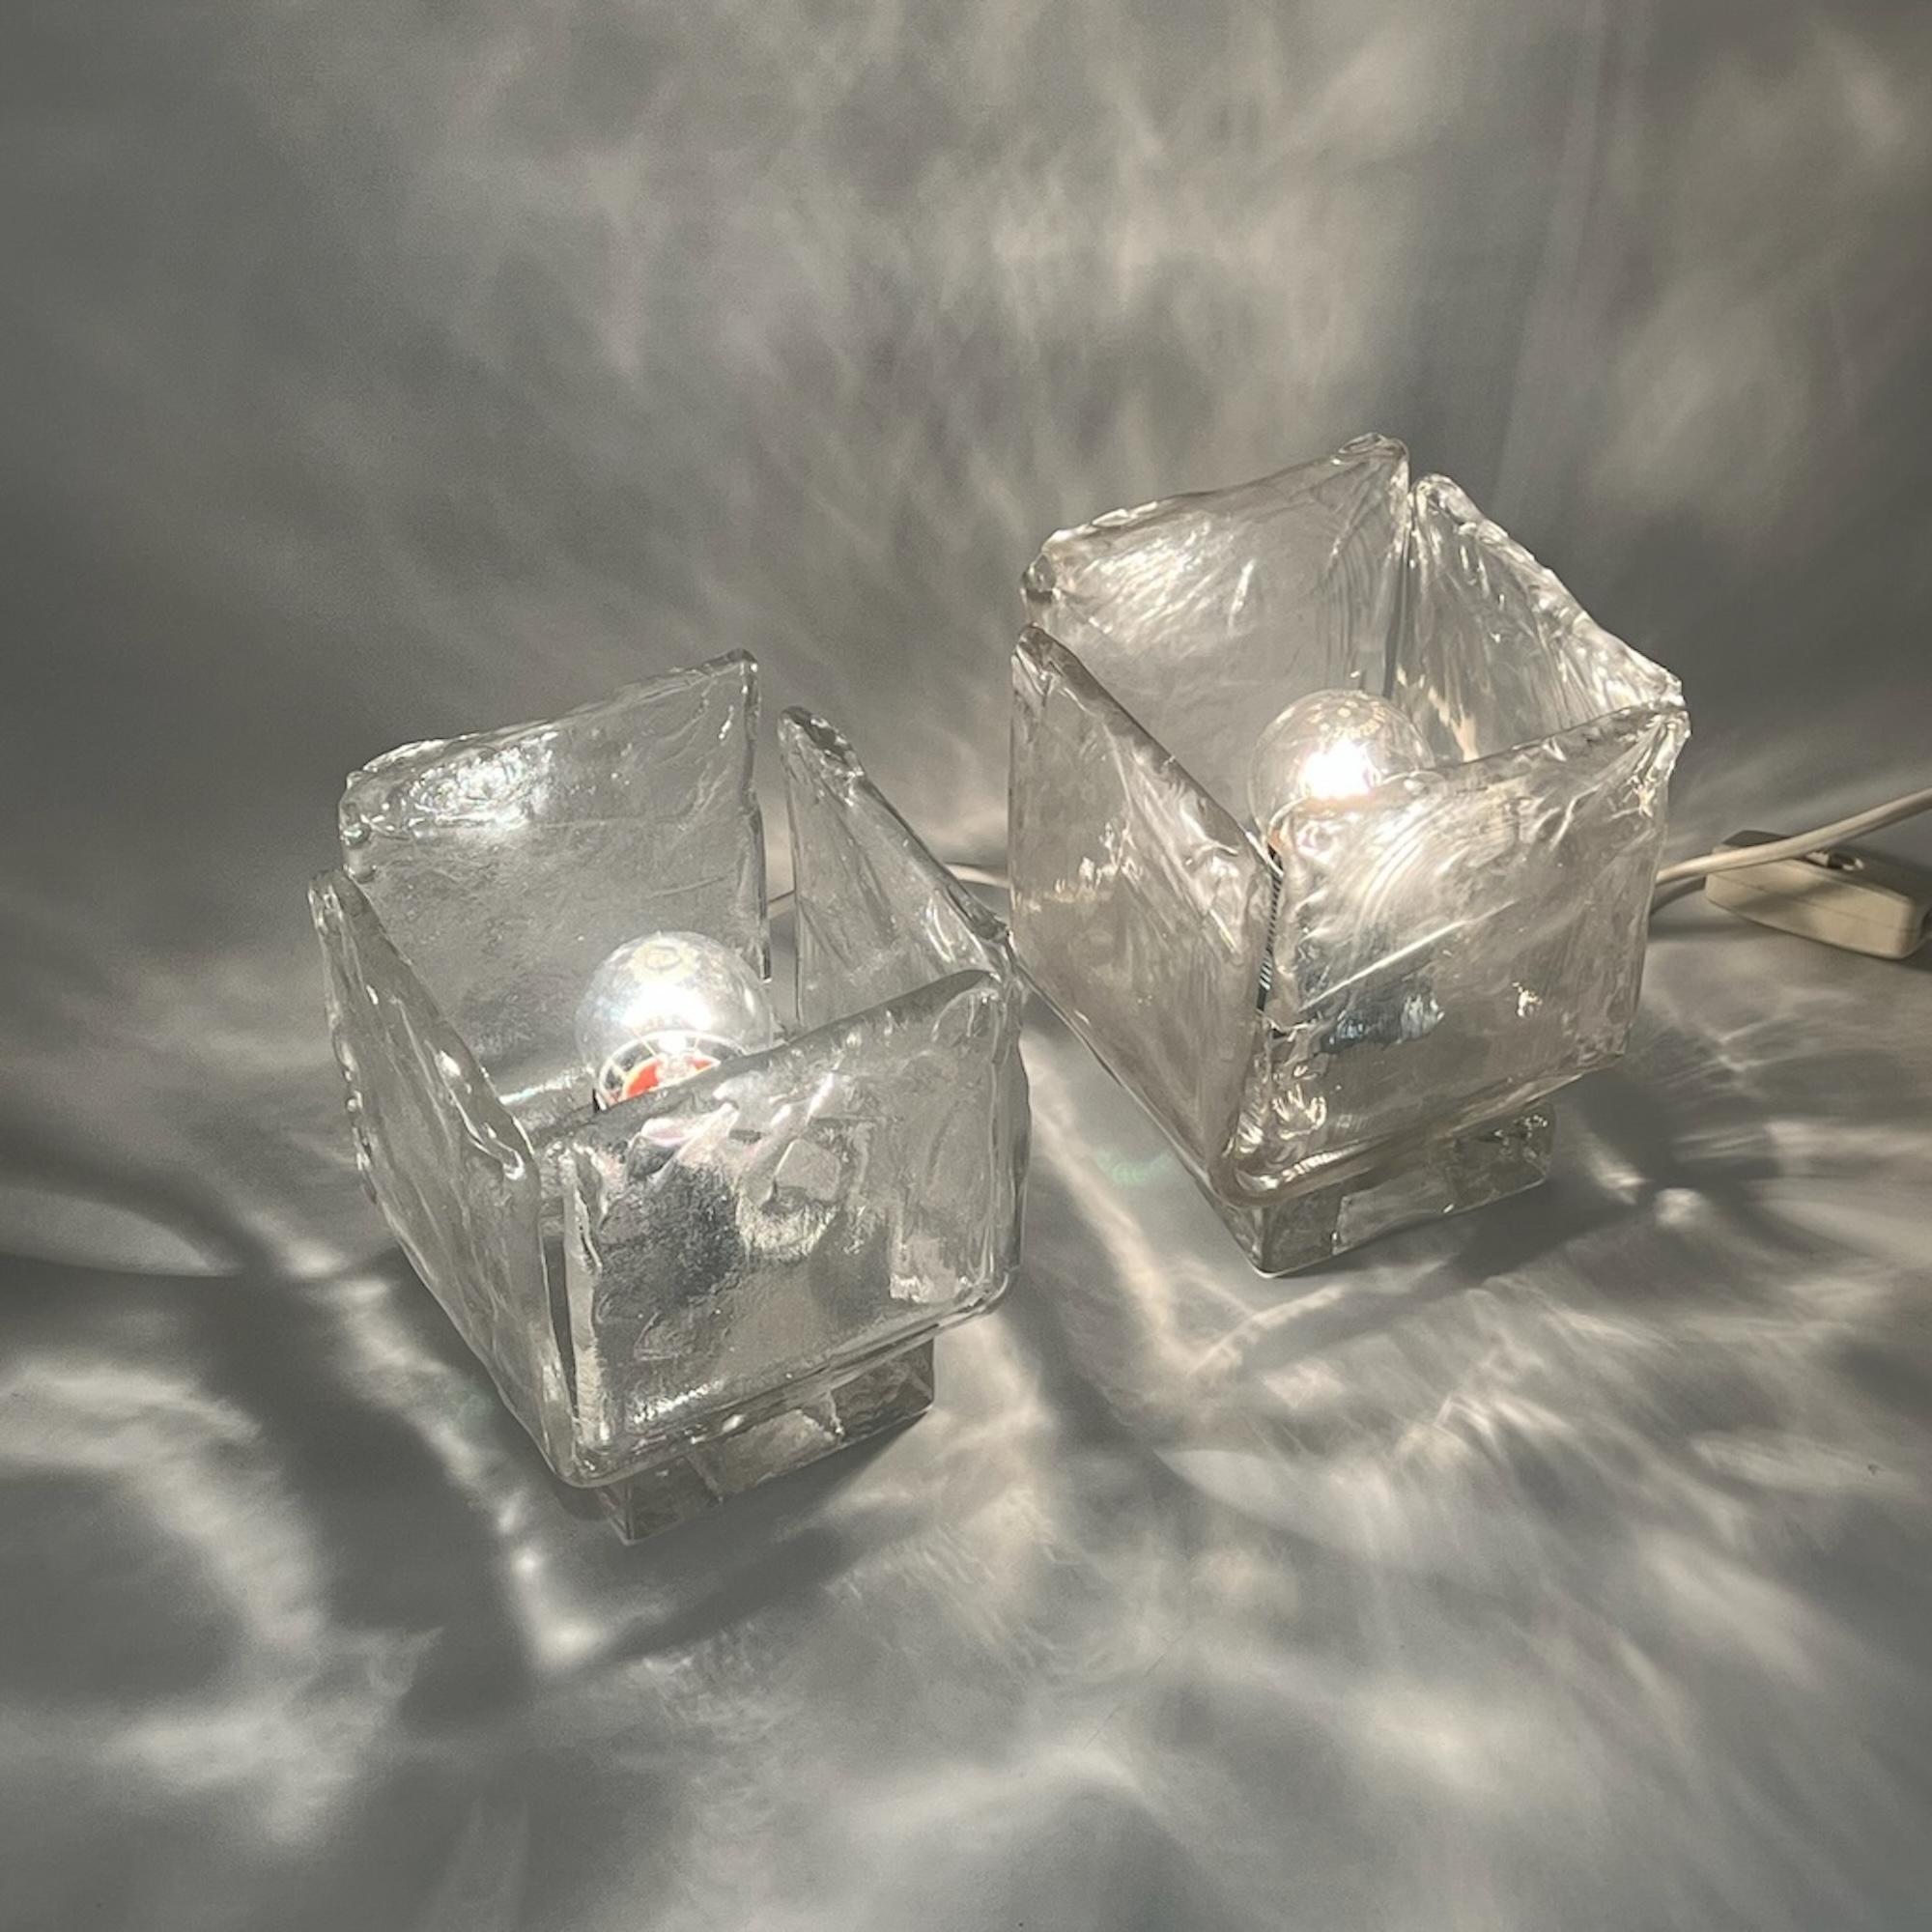 Découvrez le summum de l'excellence artisanale avec notre paire exclusive de lampes en verre de Murano des années 1970, méticuleusement fabriquées à la perfection par l'historique Vetrerie Toso en Italie.

Imprégnées de l'allure enchanteresse du